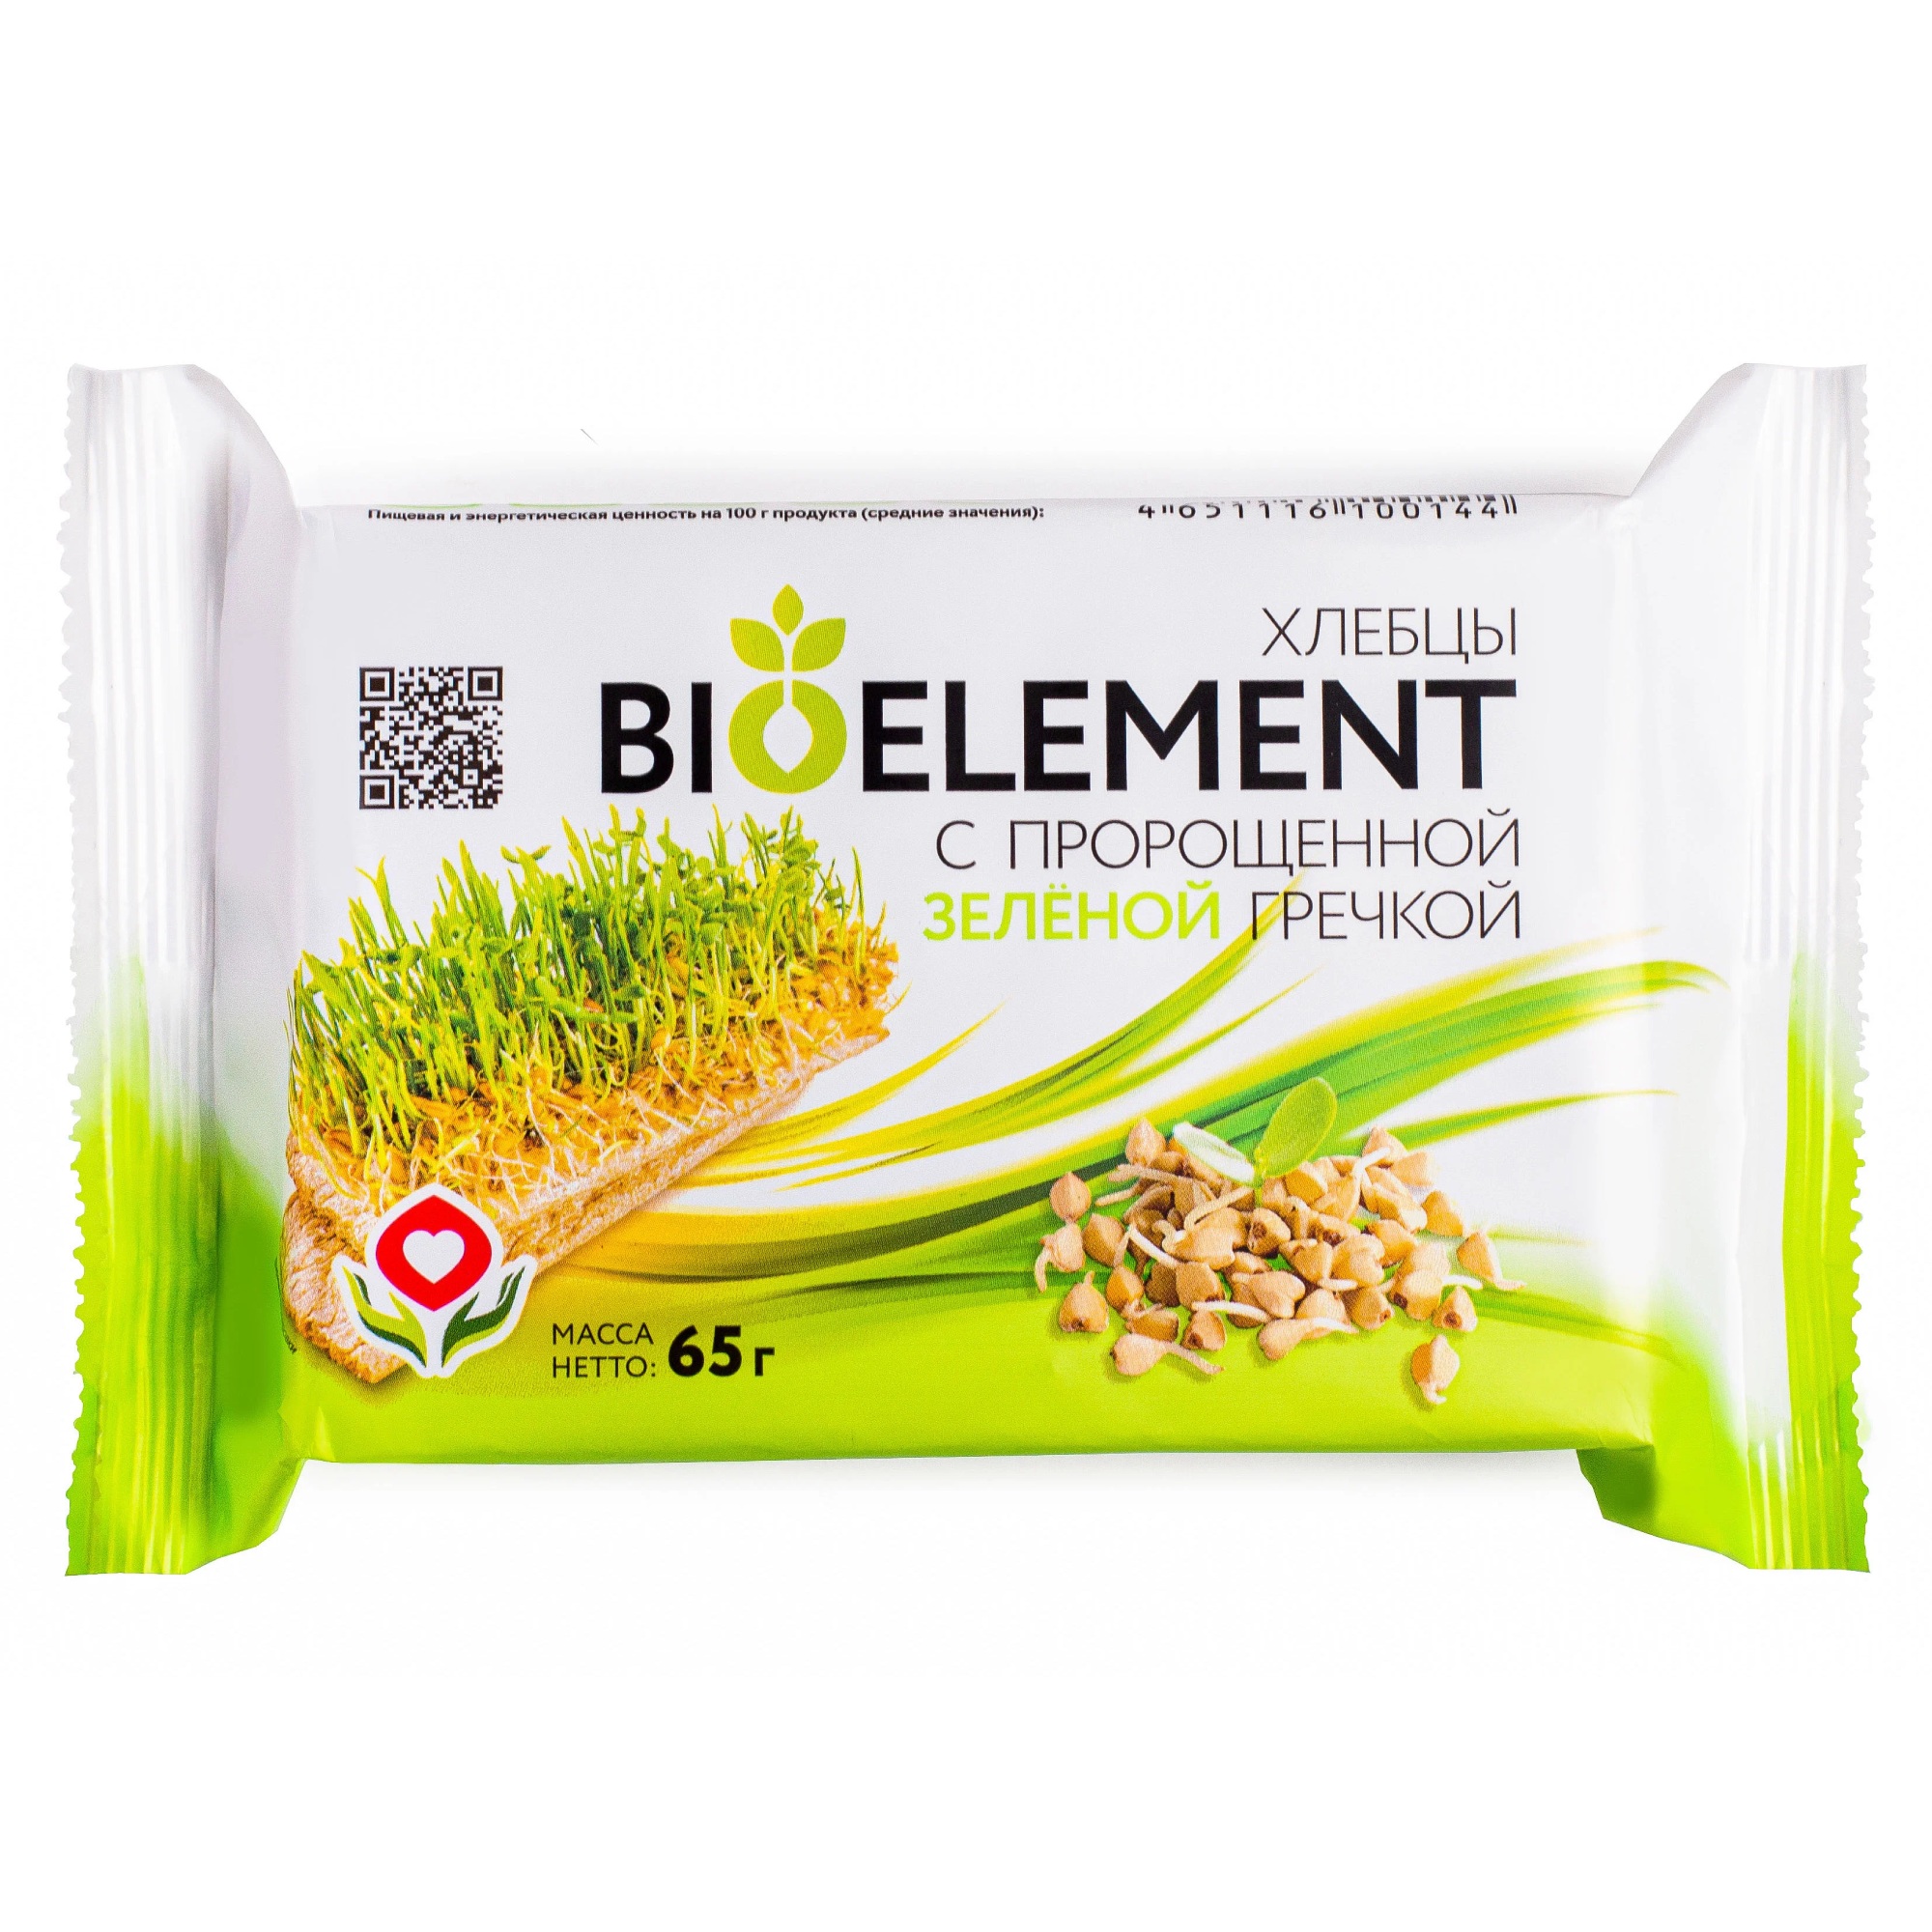 Хлебцы BioElement с пророщенной зеленой гречкой, 65 г